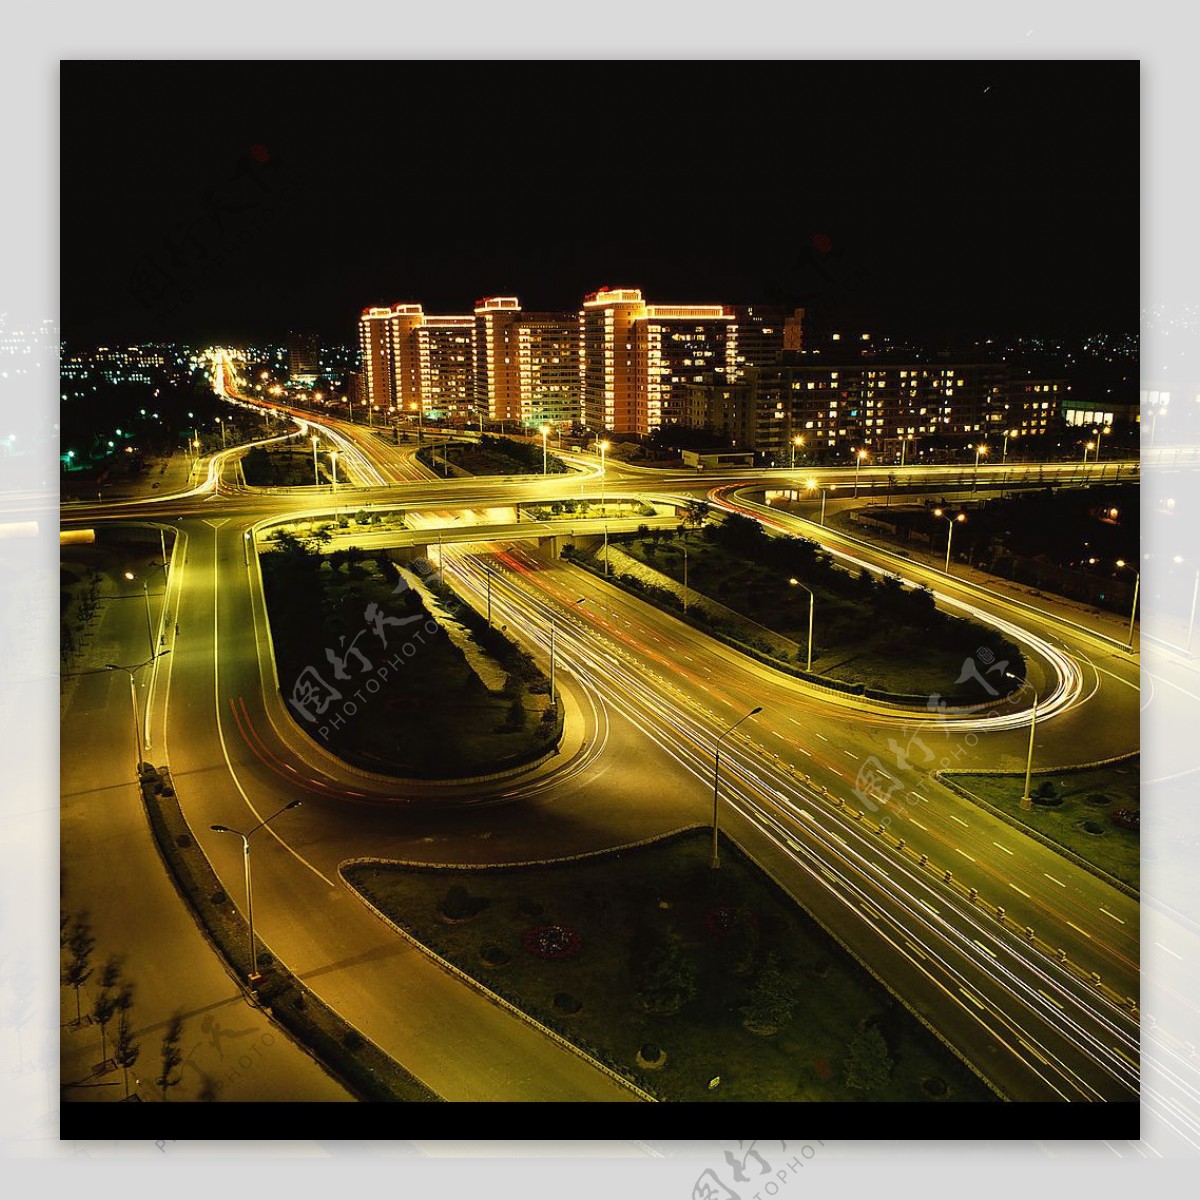 城市风光北京建国门立交桥夜景图片